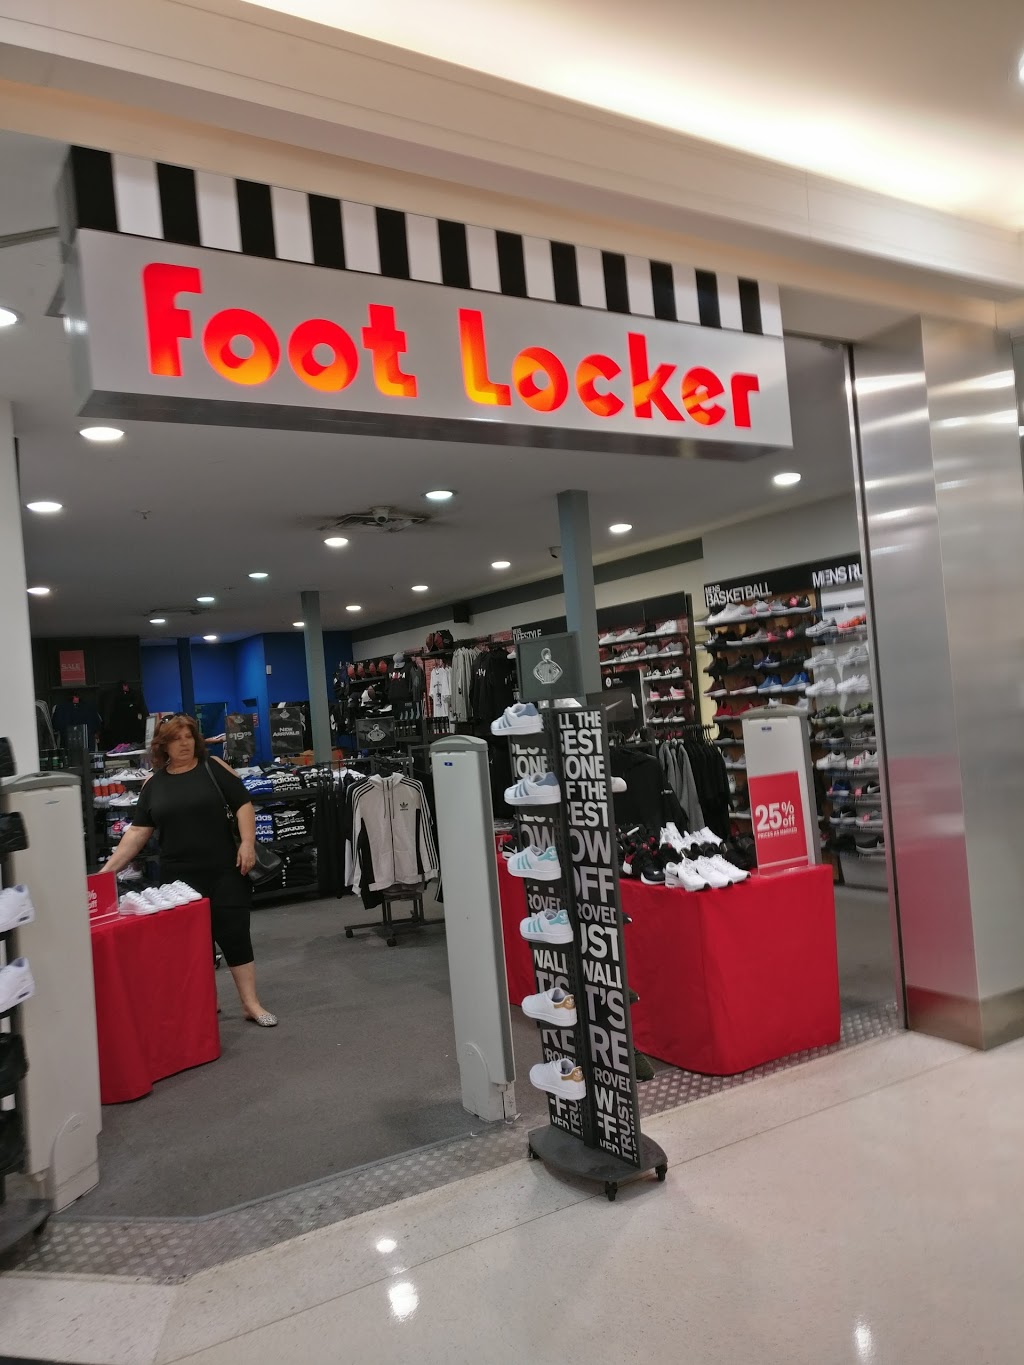 Foot Locker - Shoe store | Westfield 